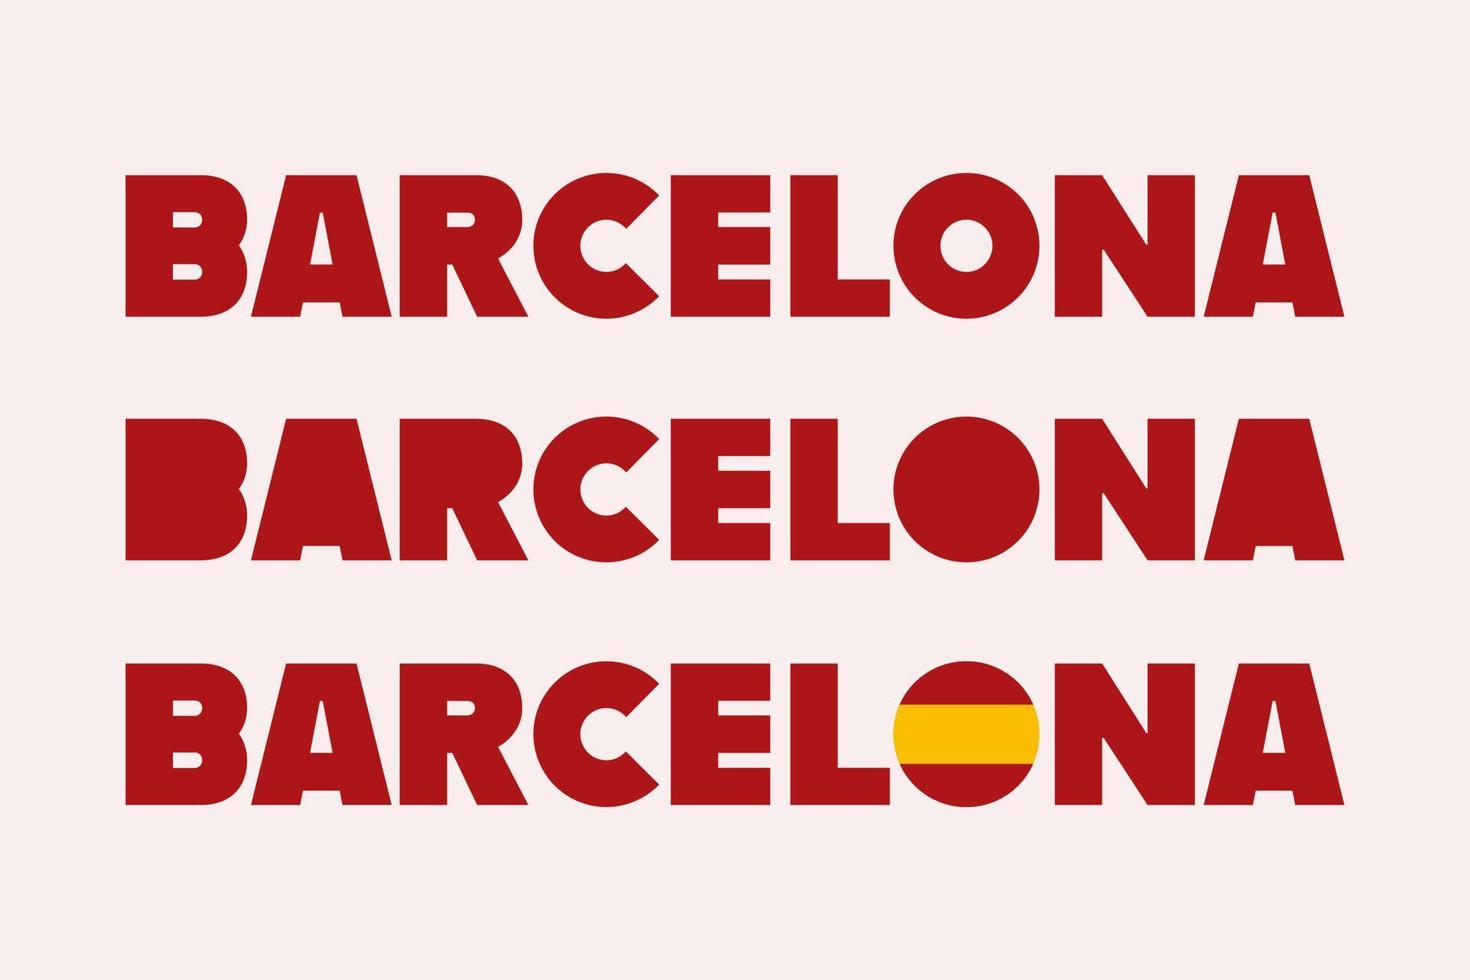 barcelone espagne, typographie conçoit vecteur isolé. groupe de panneaux de bannière de texte barcelone catalogne, pour t-shirts, affiches, cartes postales et plus encore.